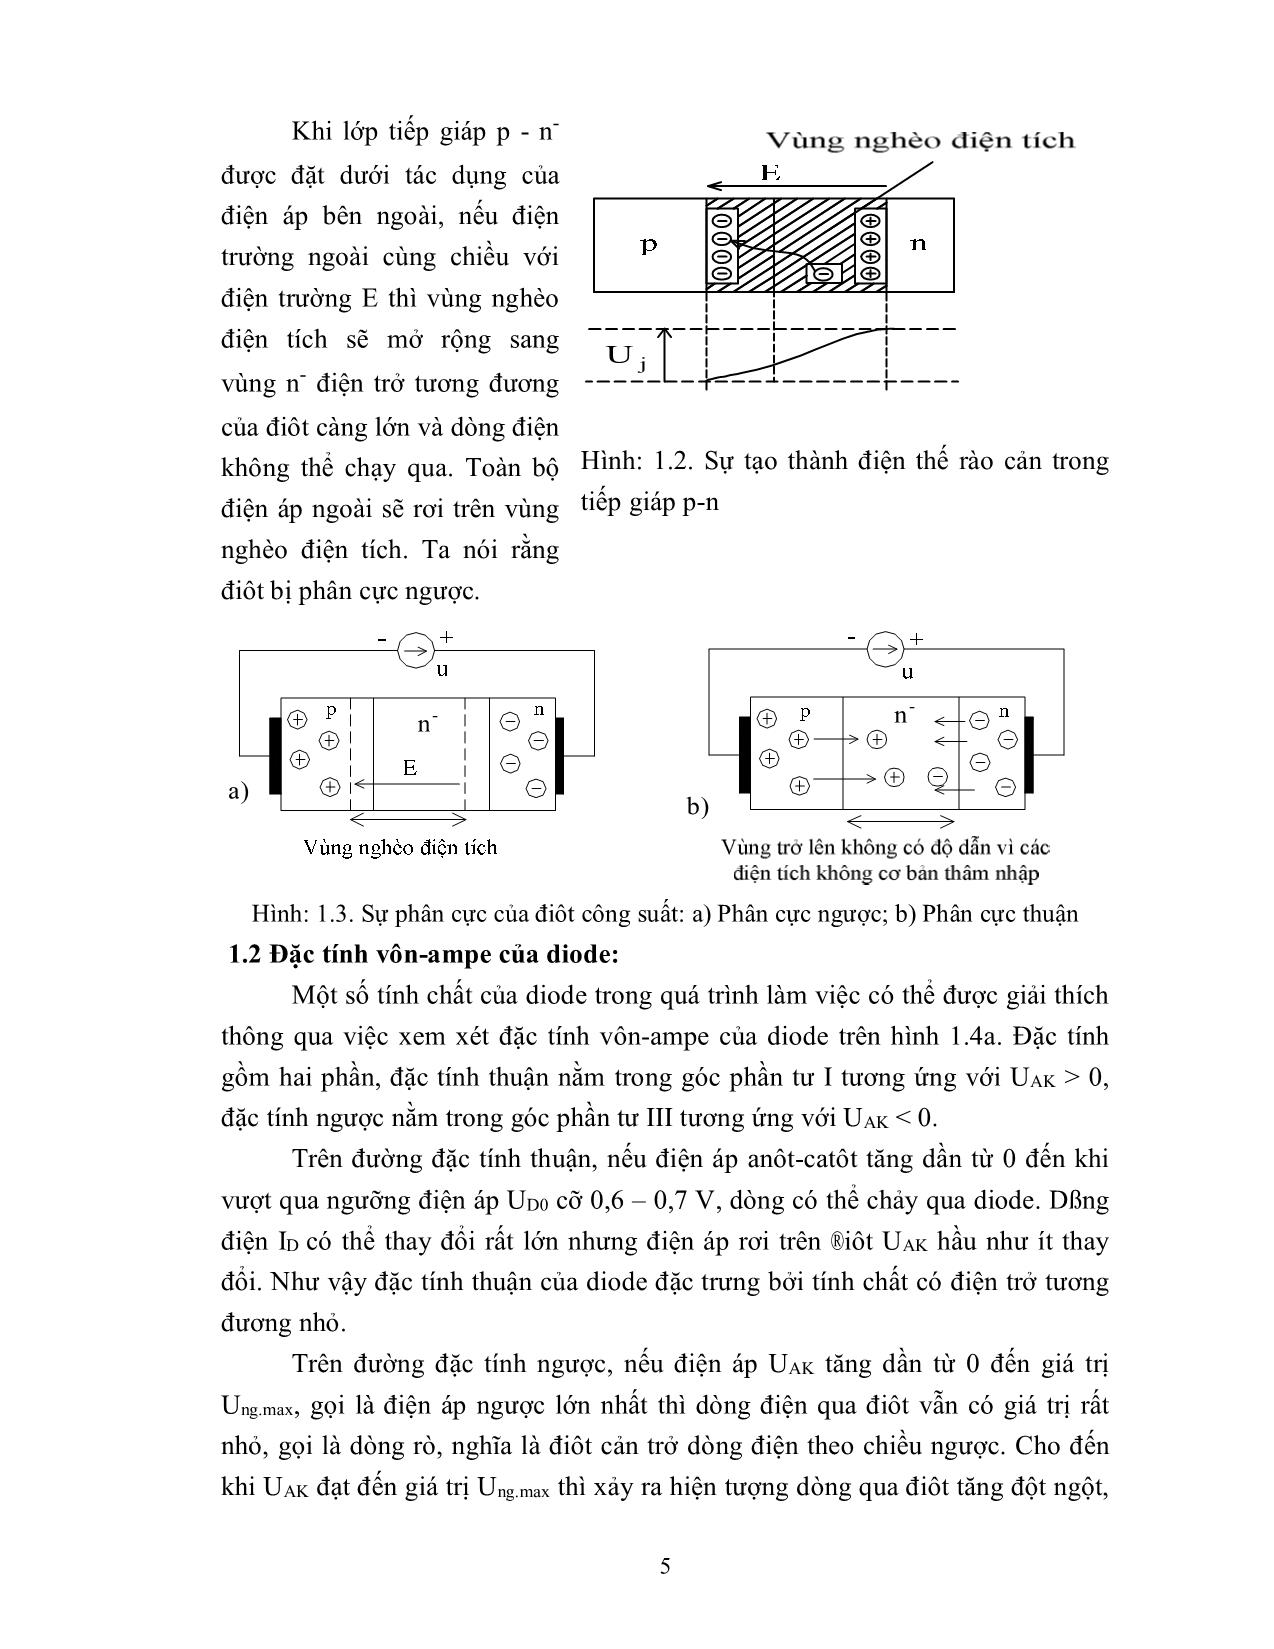 Bài giảng mô đun Lắp mạch điện tử công suất trang 5